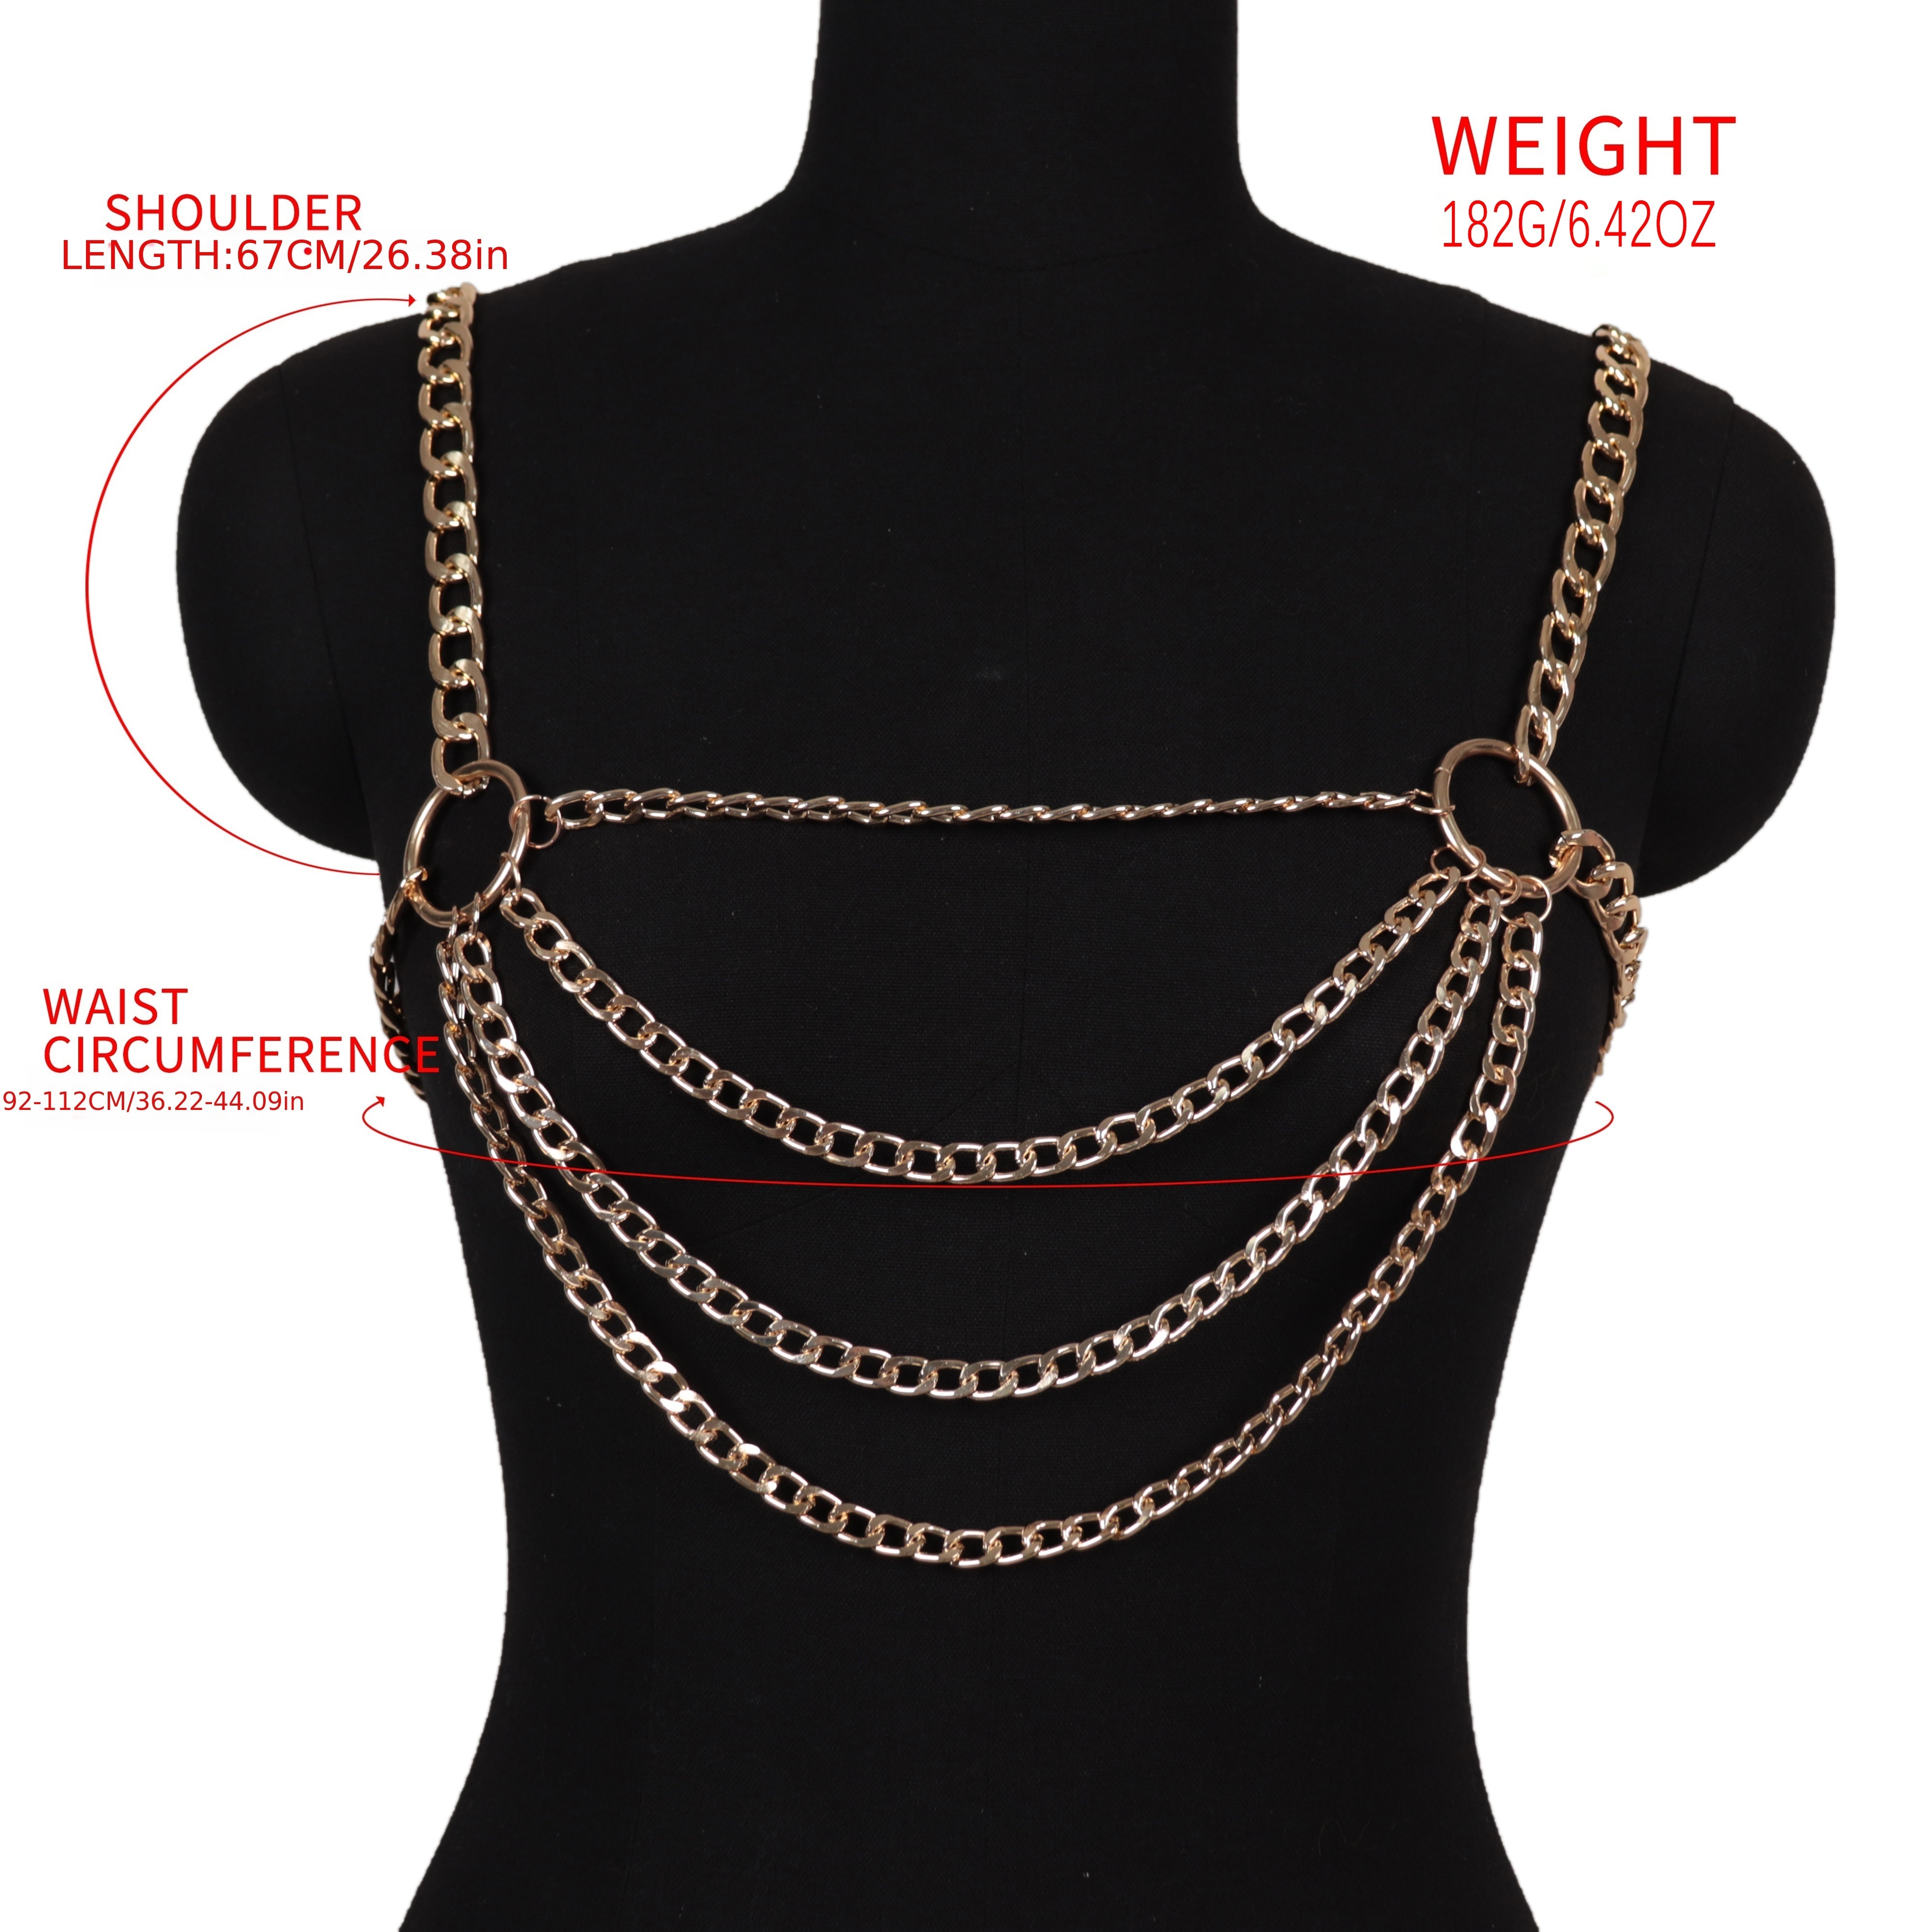 Body Chain Necklace Body Chain Jewelry Body Harness Wire